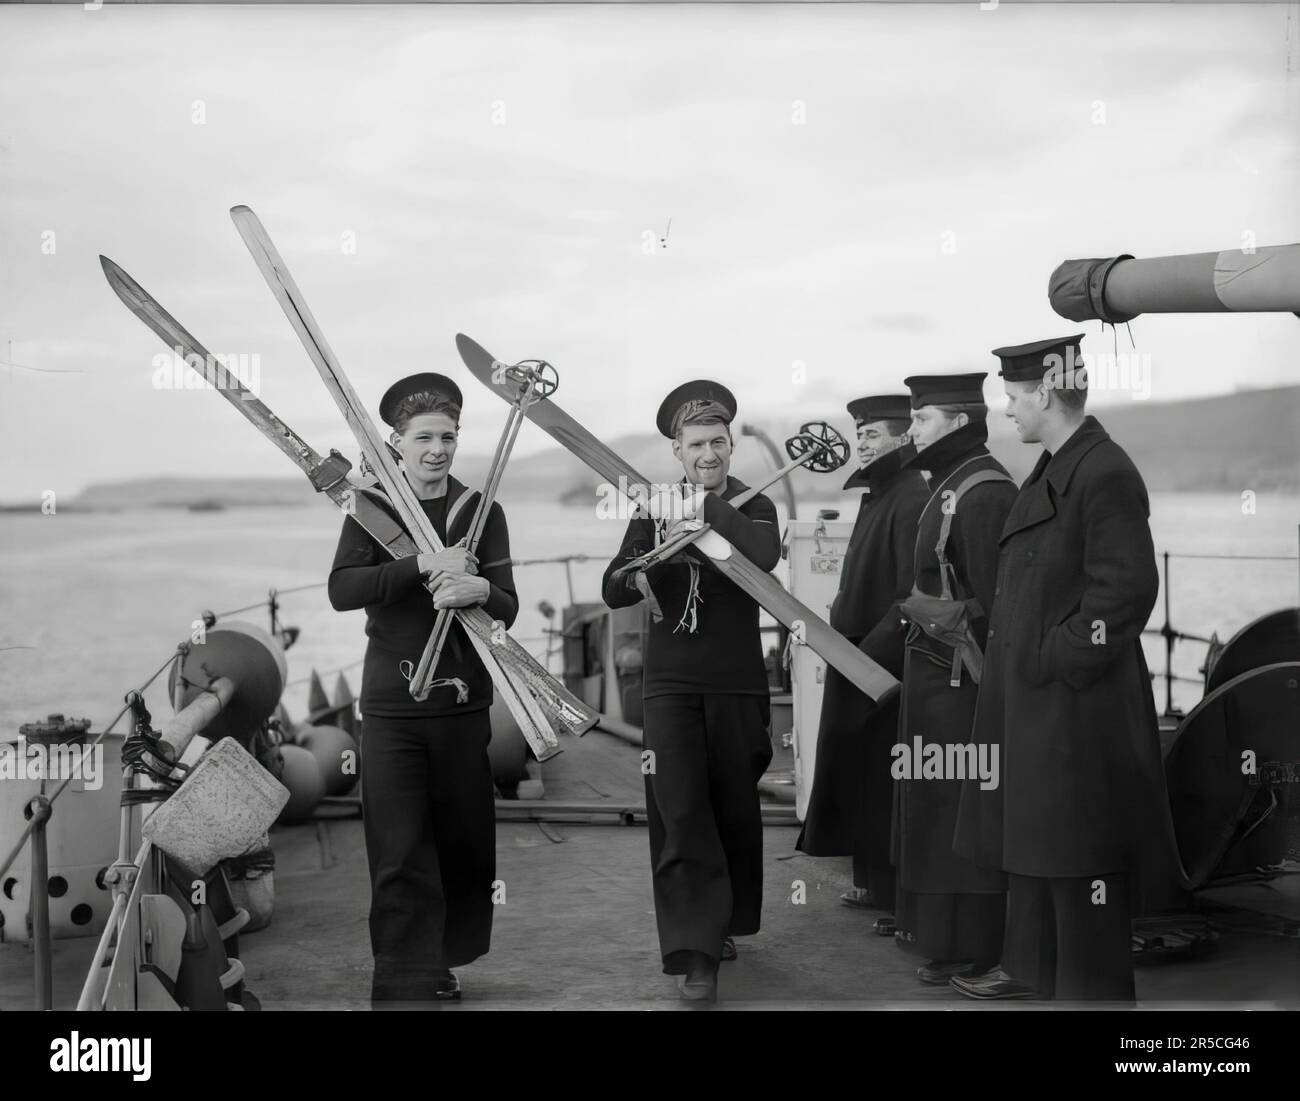 Die Royal Navy während des Zweiten Weltkriegs haben zwei Seeleute, beide ehemalige Wintersportbegeisterte, die Erlaubnis, ihre Skier mit an Bord ihres Schiffes HMS ASHANTI zu nehmen Stockfoto